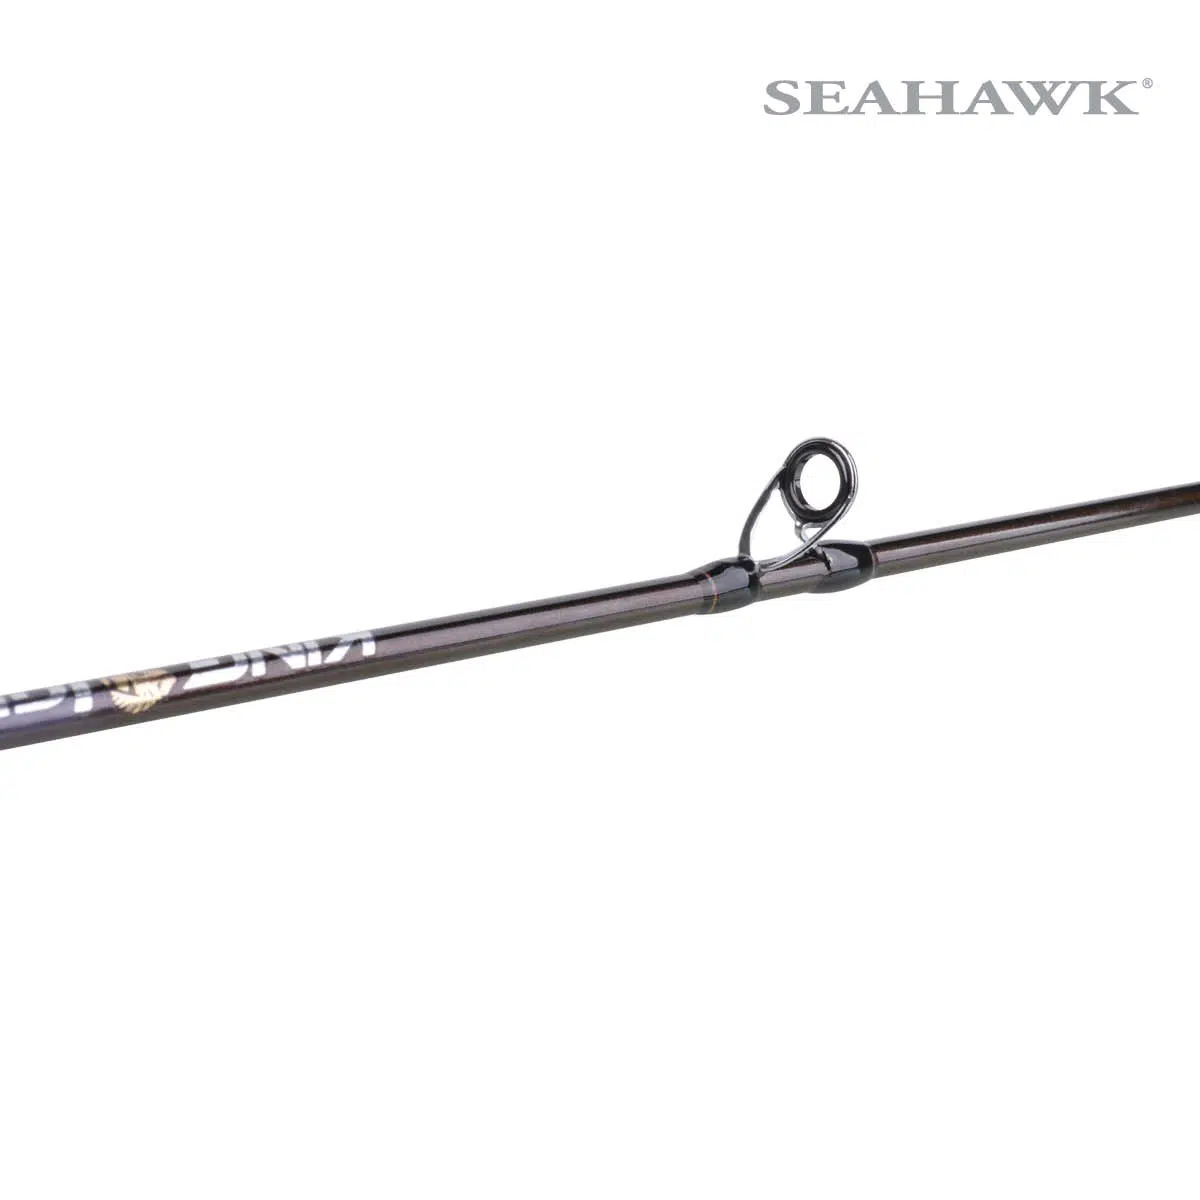 https://seahawkfishing.com/wp-content/uploads/2021/10/Seahawk-Casting-Rod-King-Iguana-KIG-03.jpg.webp